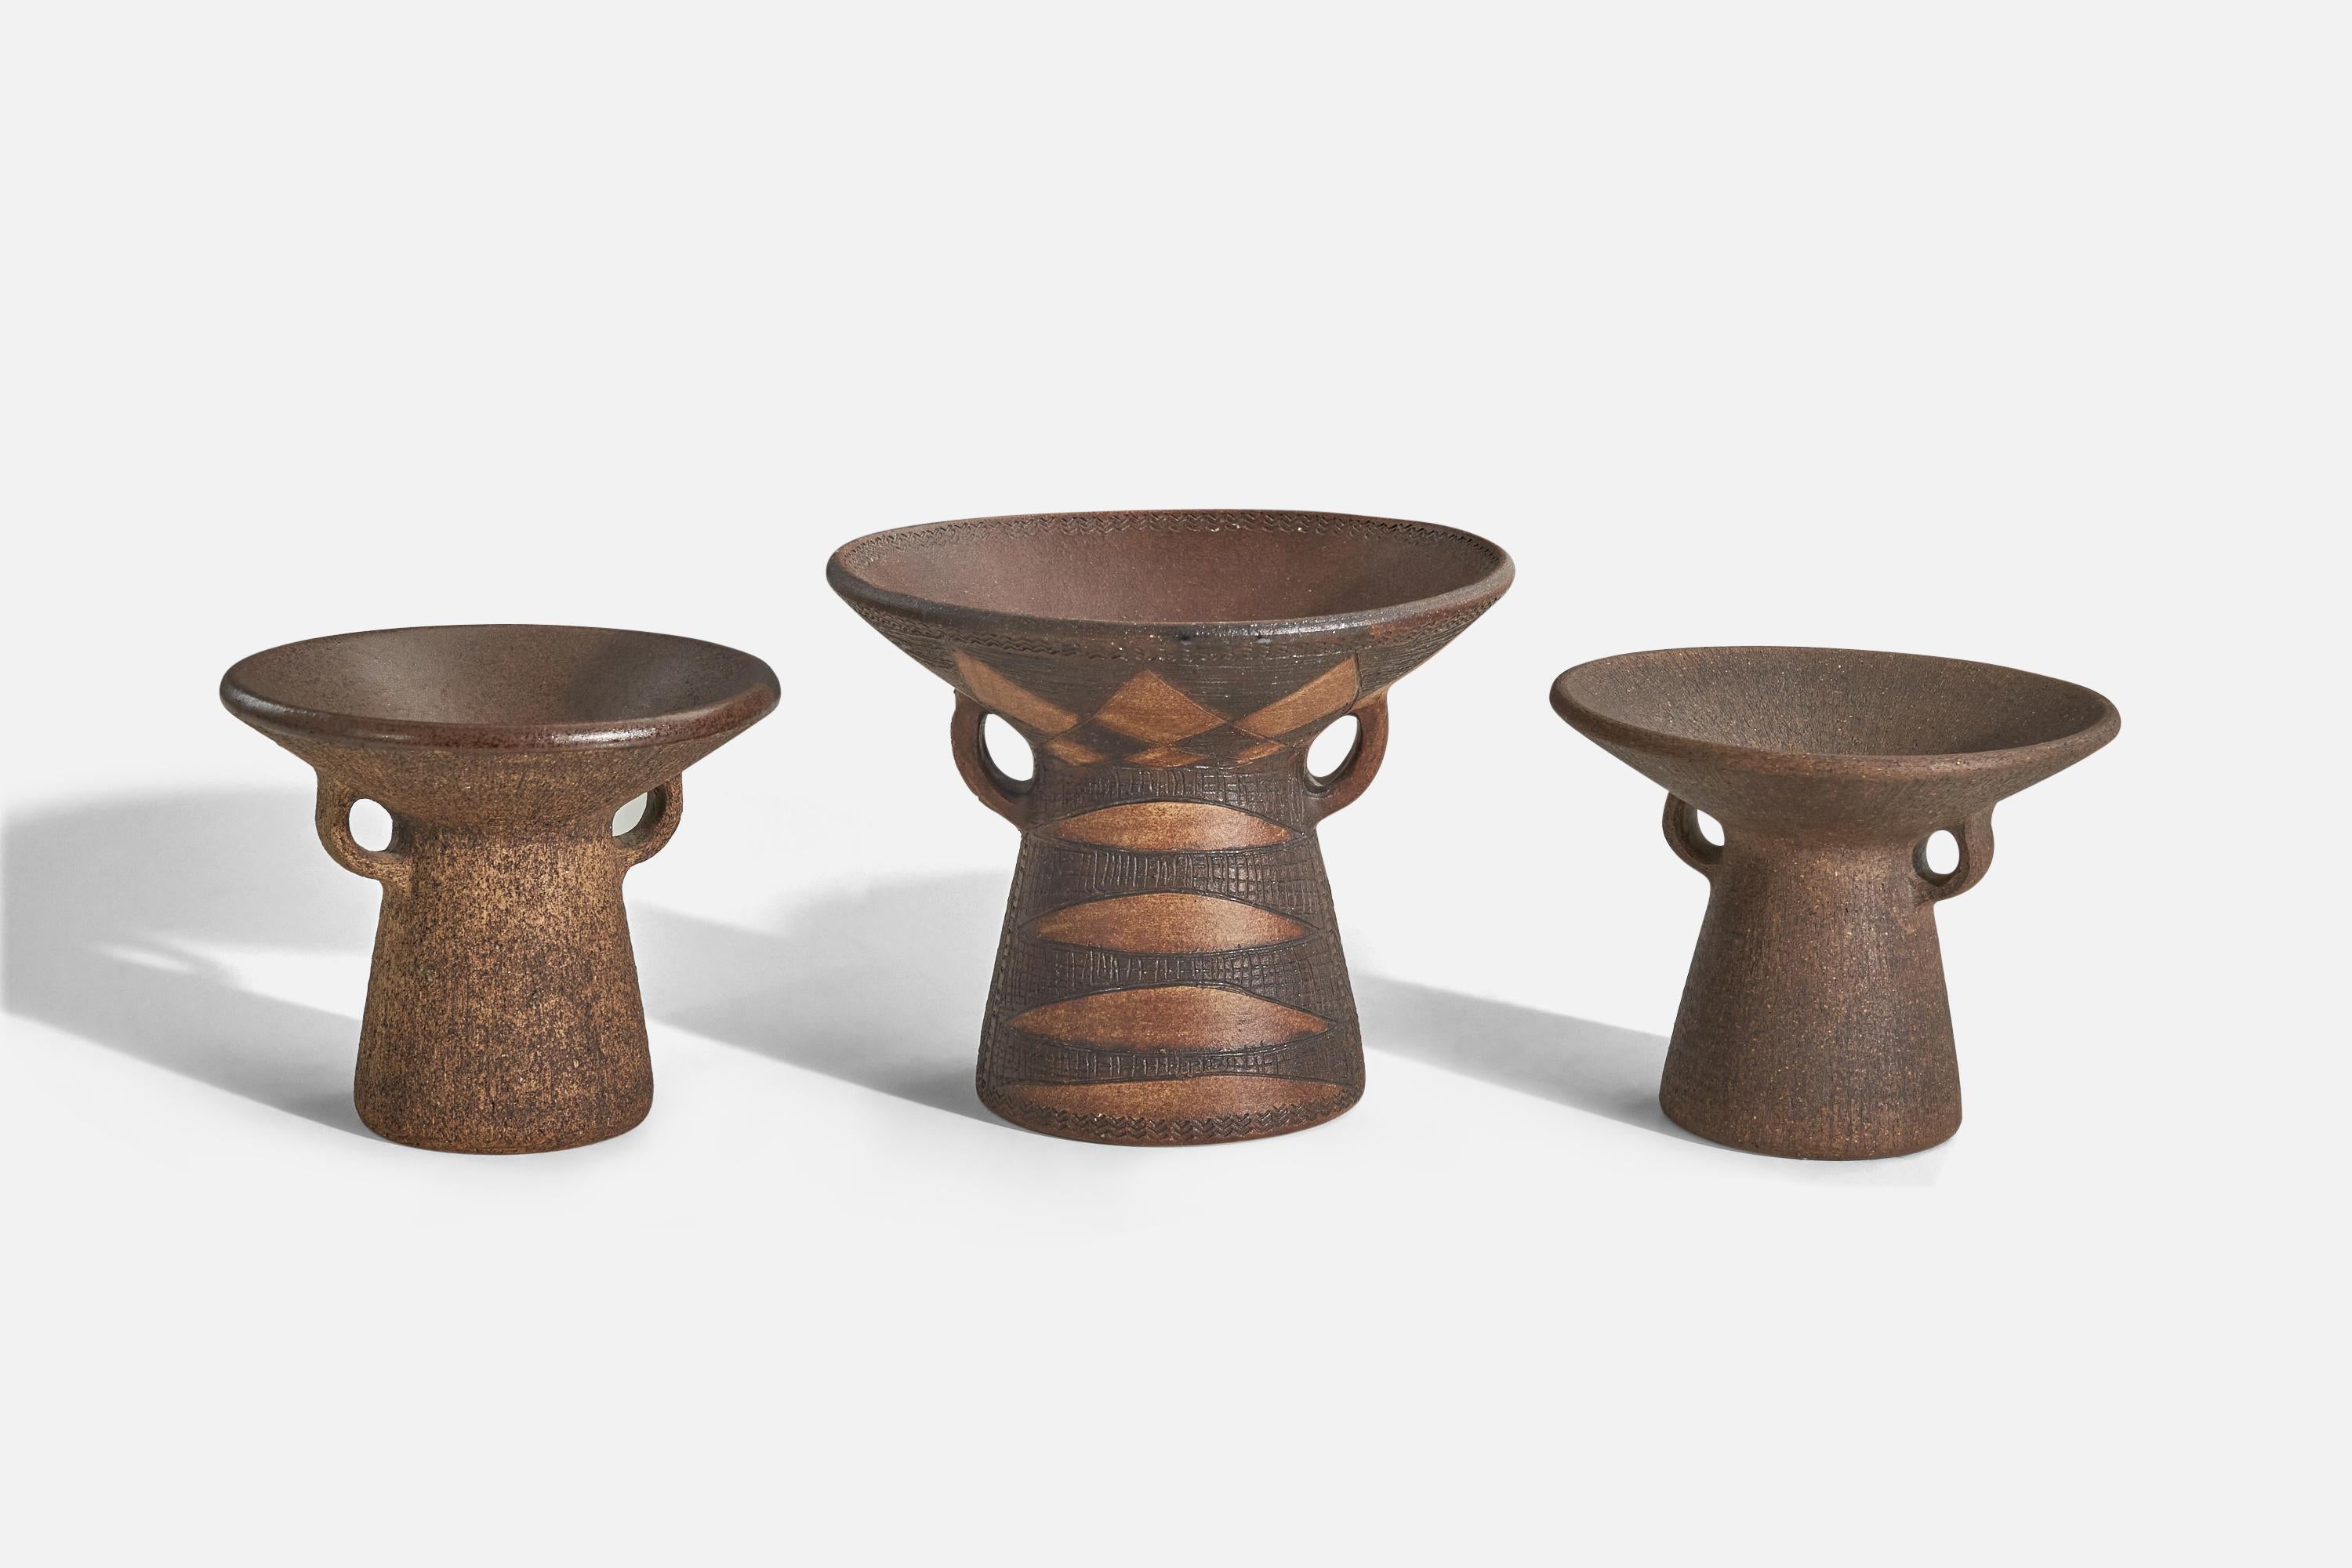 Un ensemble de trois vases en grès émaillé brun conçus par Nils Allan Johannesson et produits par son studio de Barsebäck, en Suède, vers les années 1960.

Les dimensions indiquées se réfèrent au plus grand vase.
Dimensions des plus petits vases